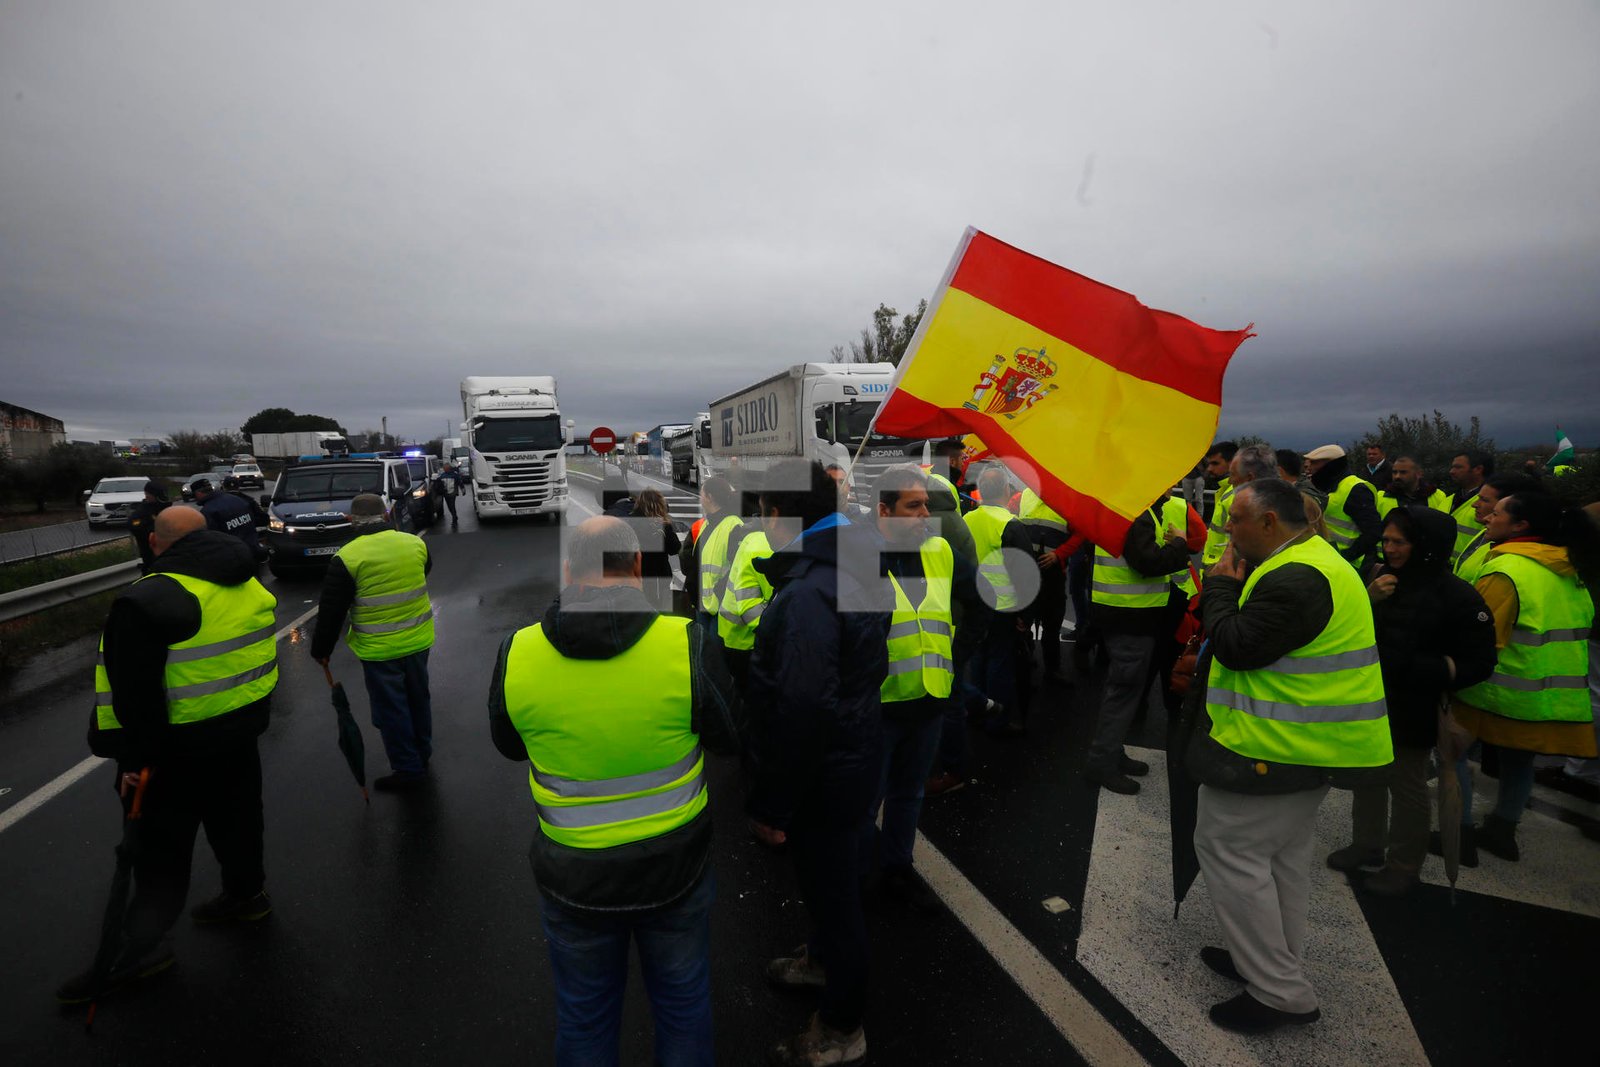 Los agricultores persisten en sus protestas con cortes de carreteras pese al mal tiempo | Imagen: EFE/Salas